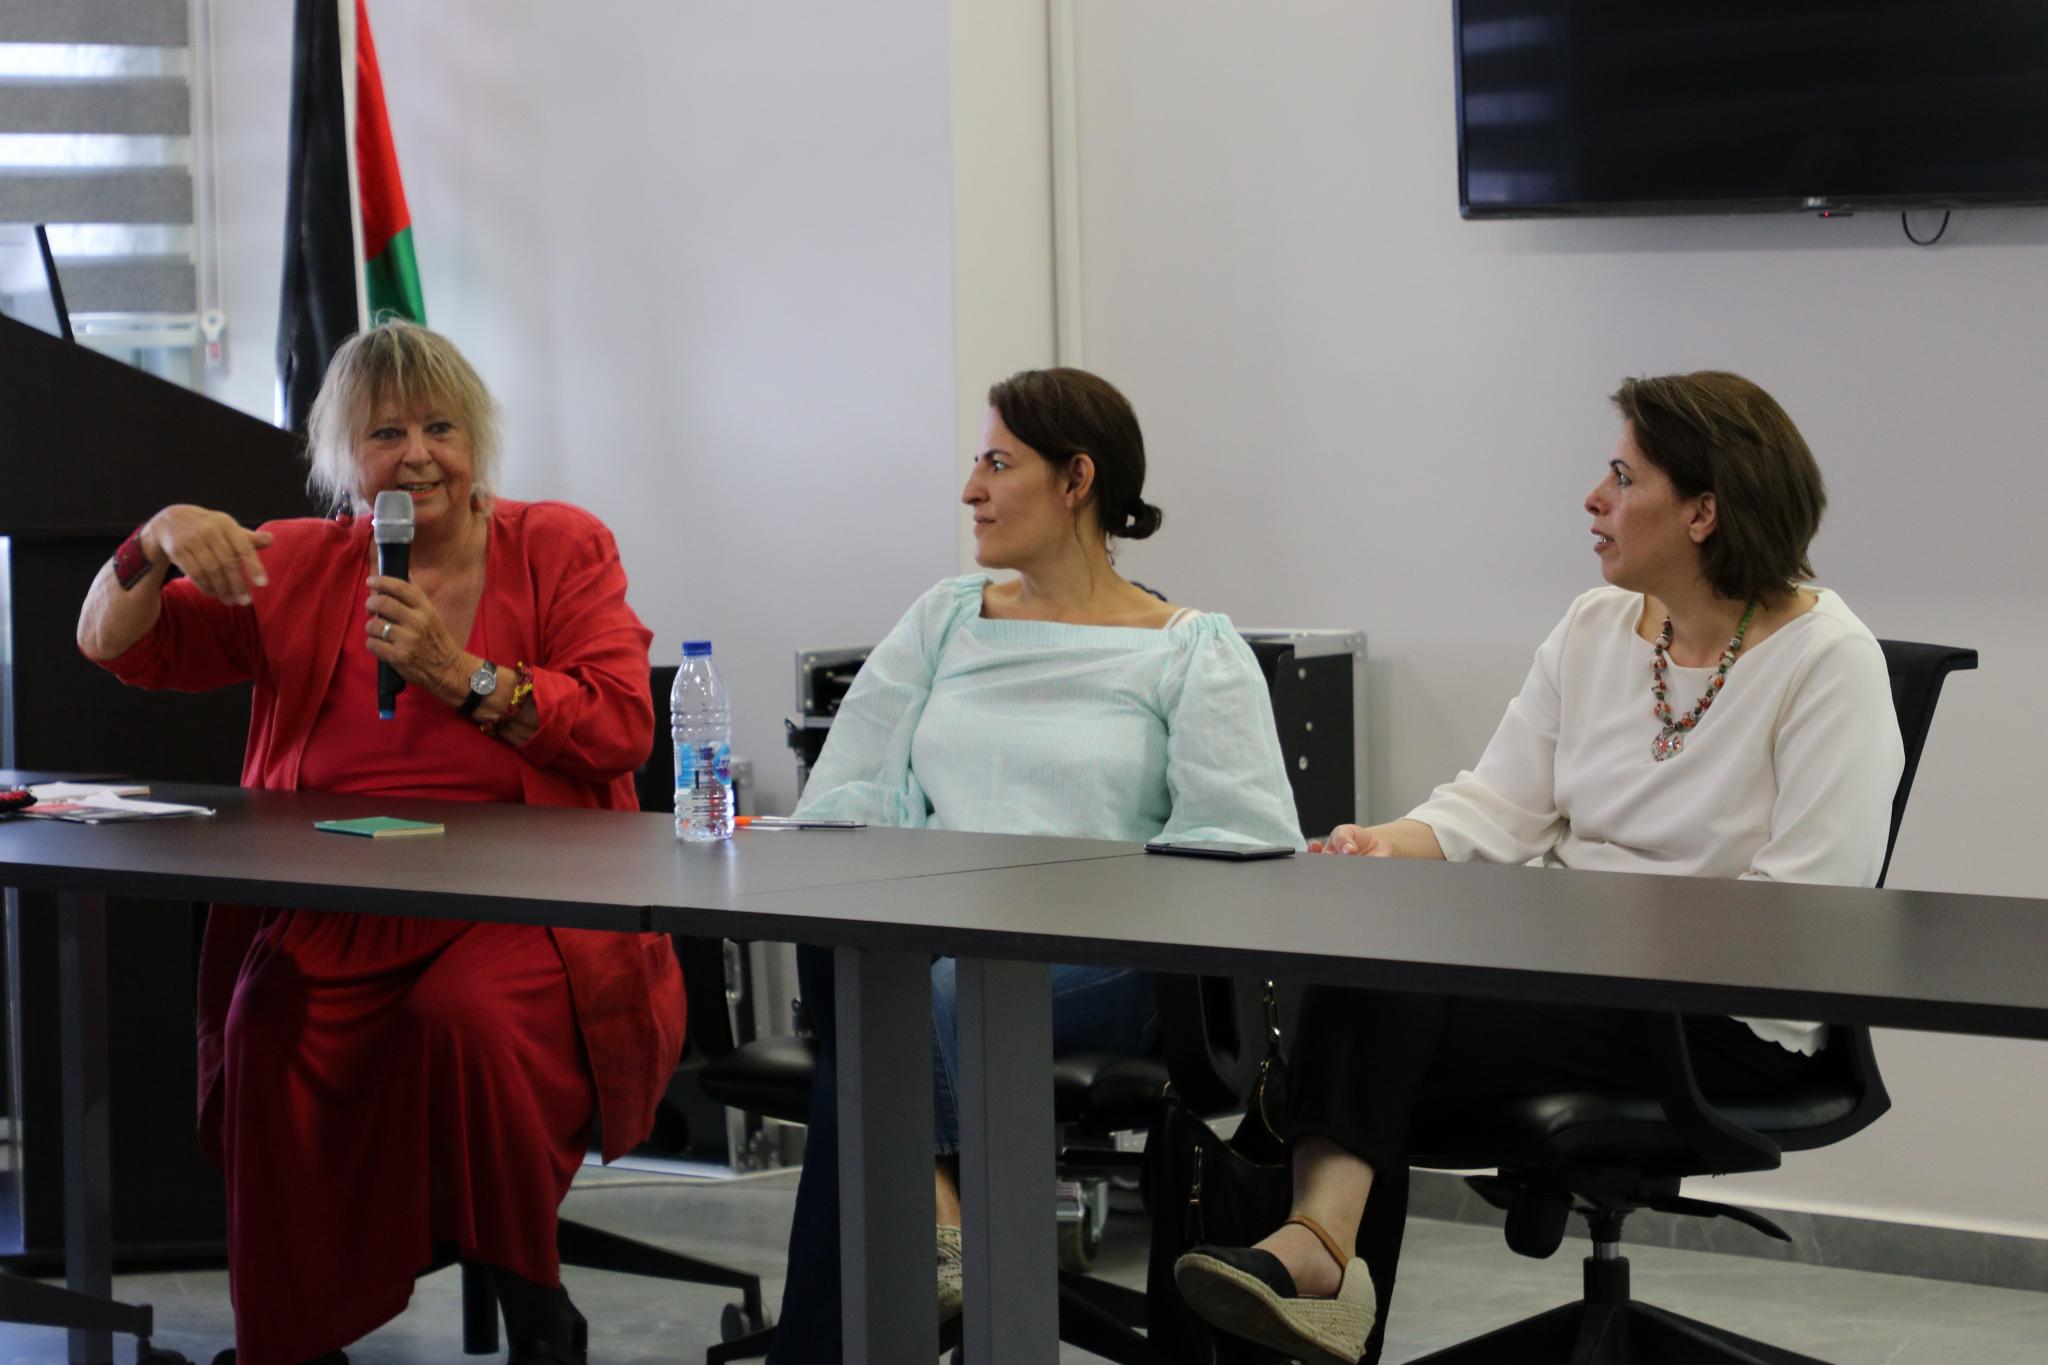 حلقة نقاش حول ضرورة تأسيس ارشيف وطني فلسطيني في الجامعة